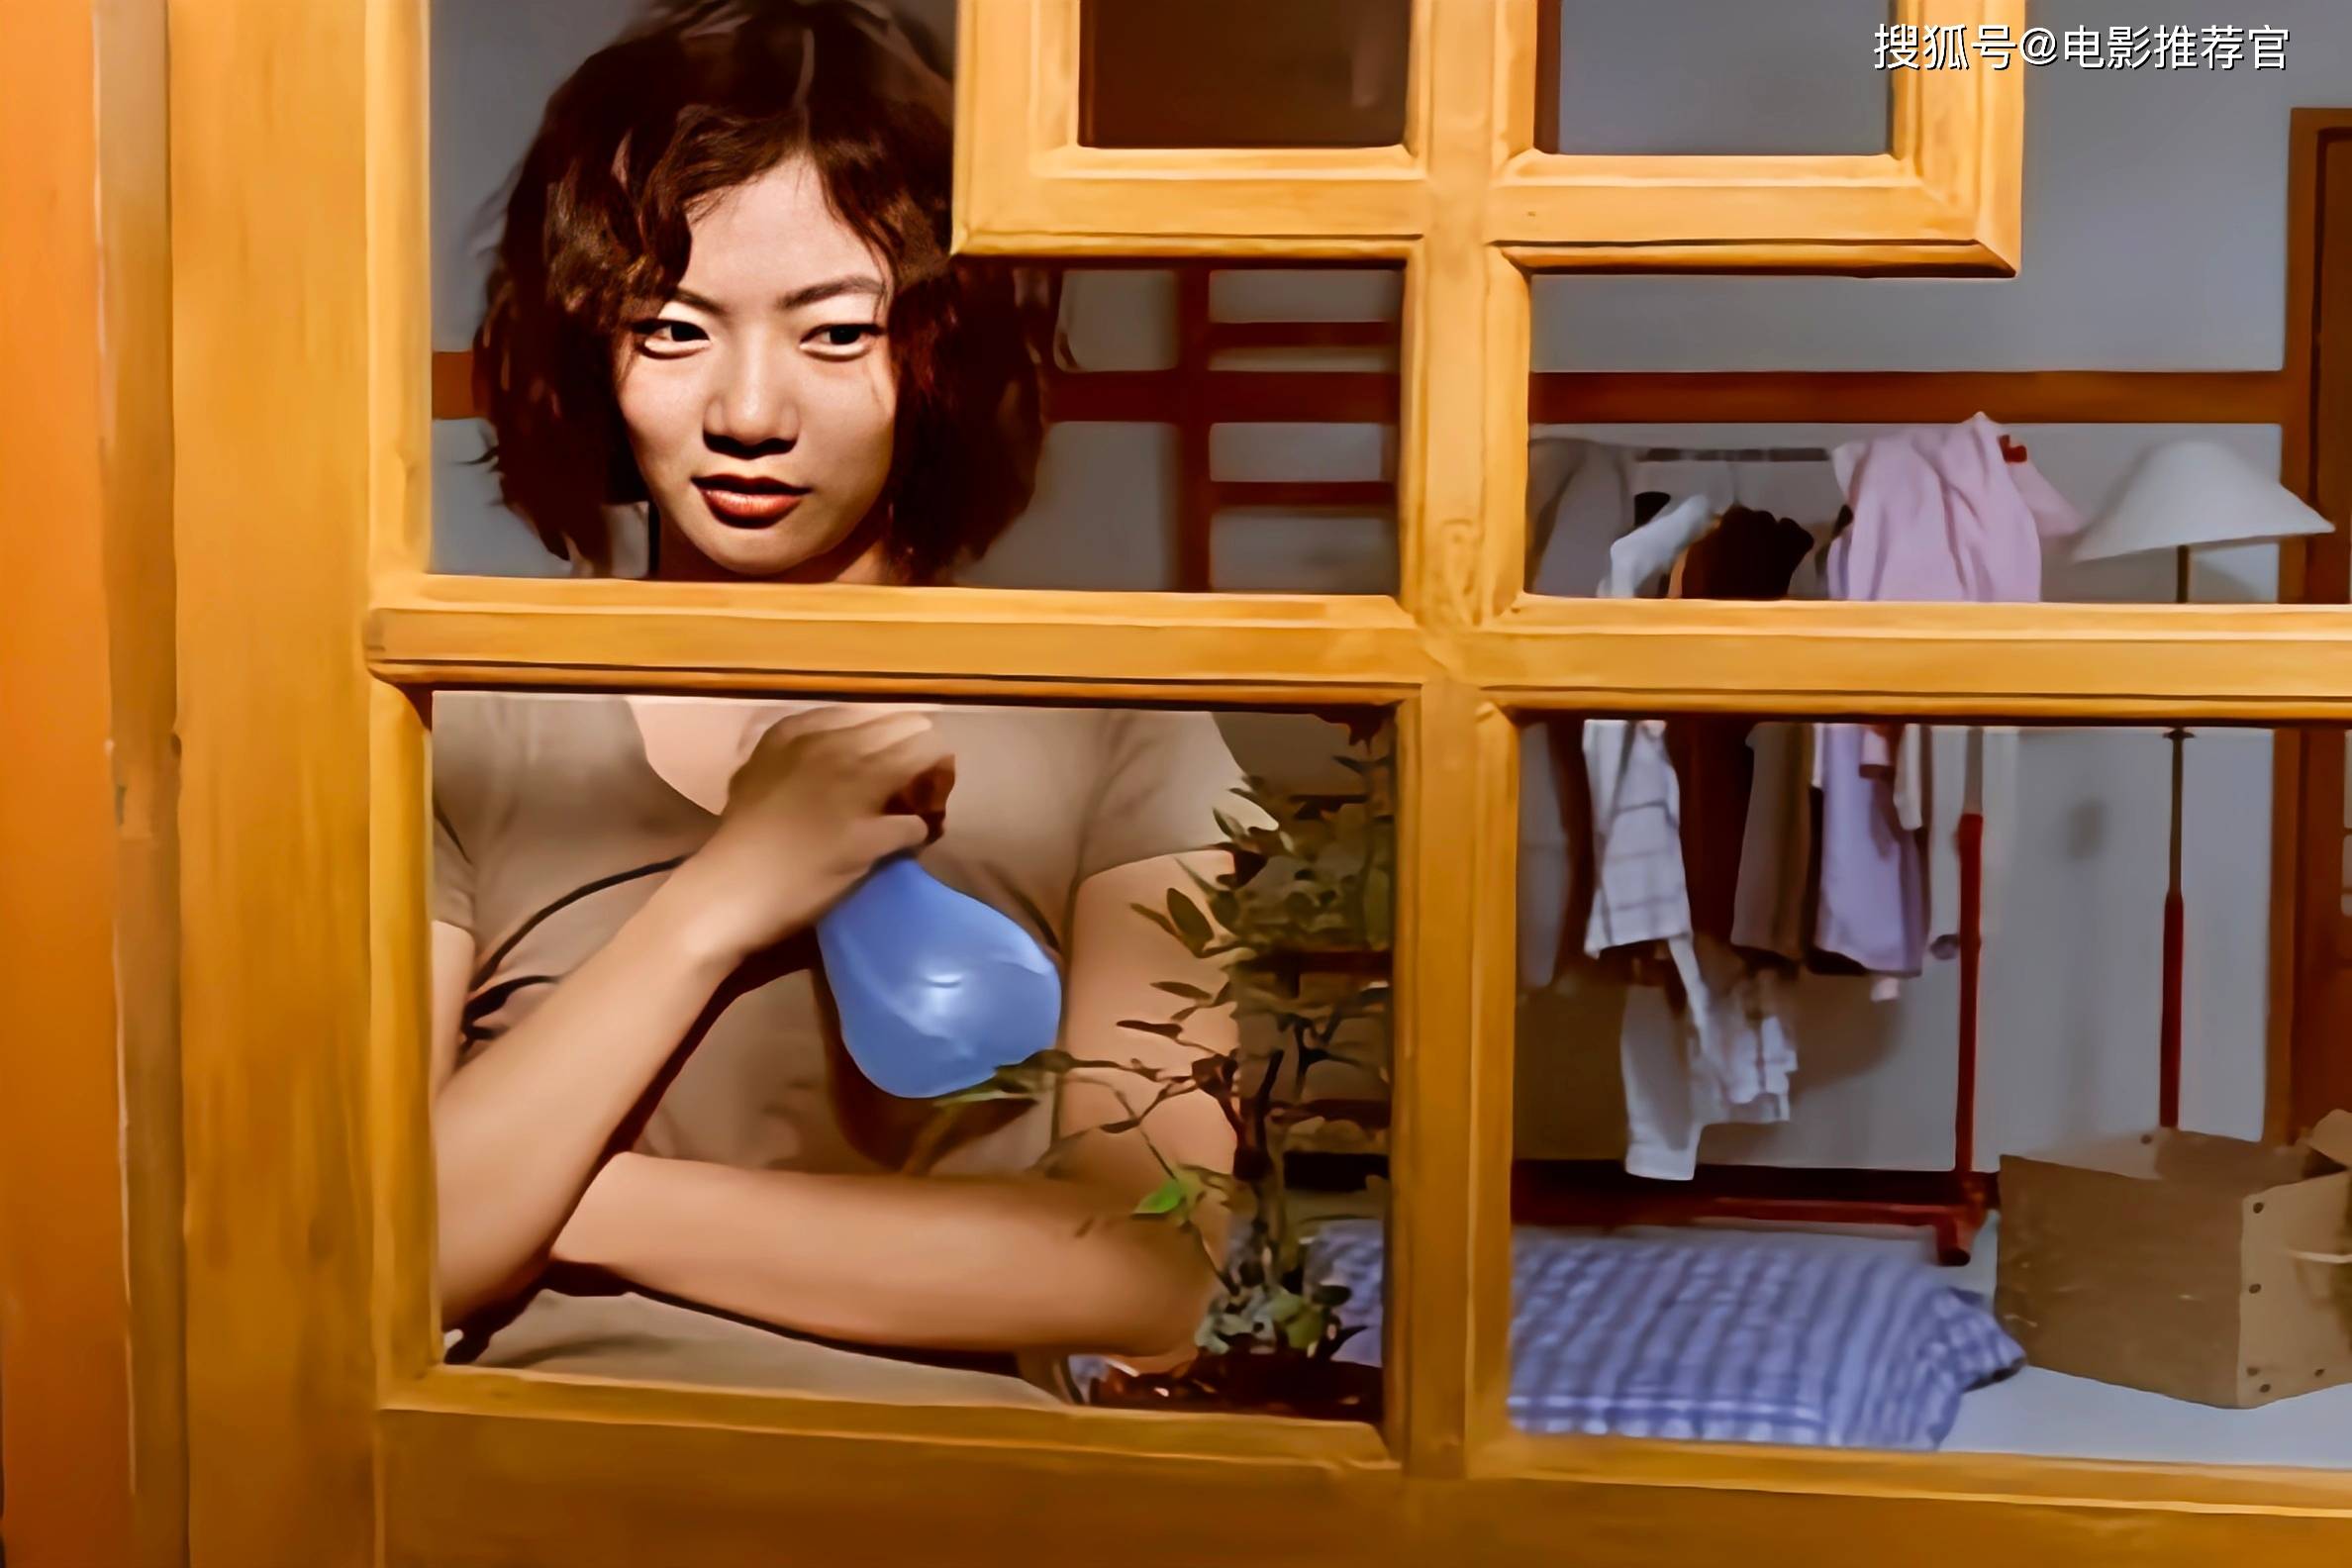 韩国风月电影《青春》:成长的痛苦与爱情的迷茫